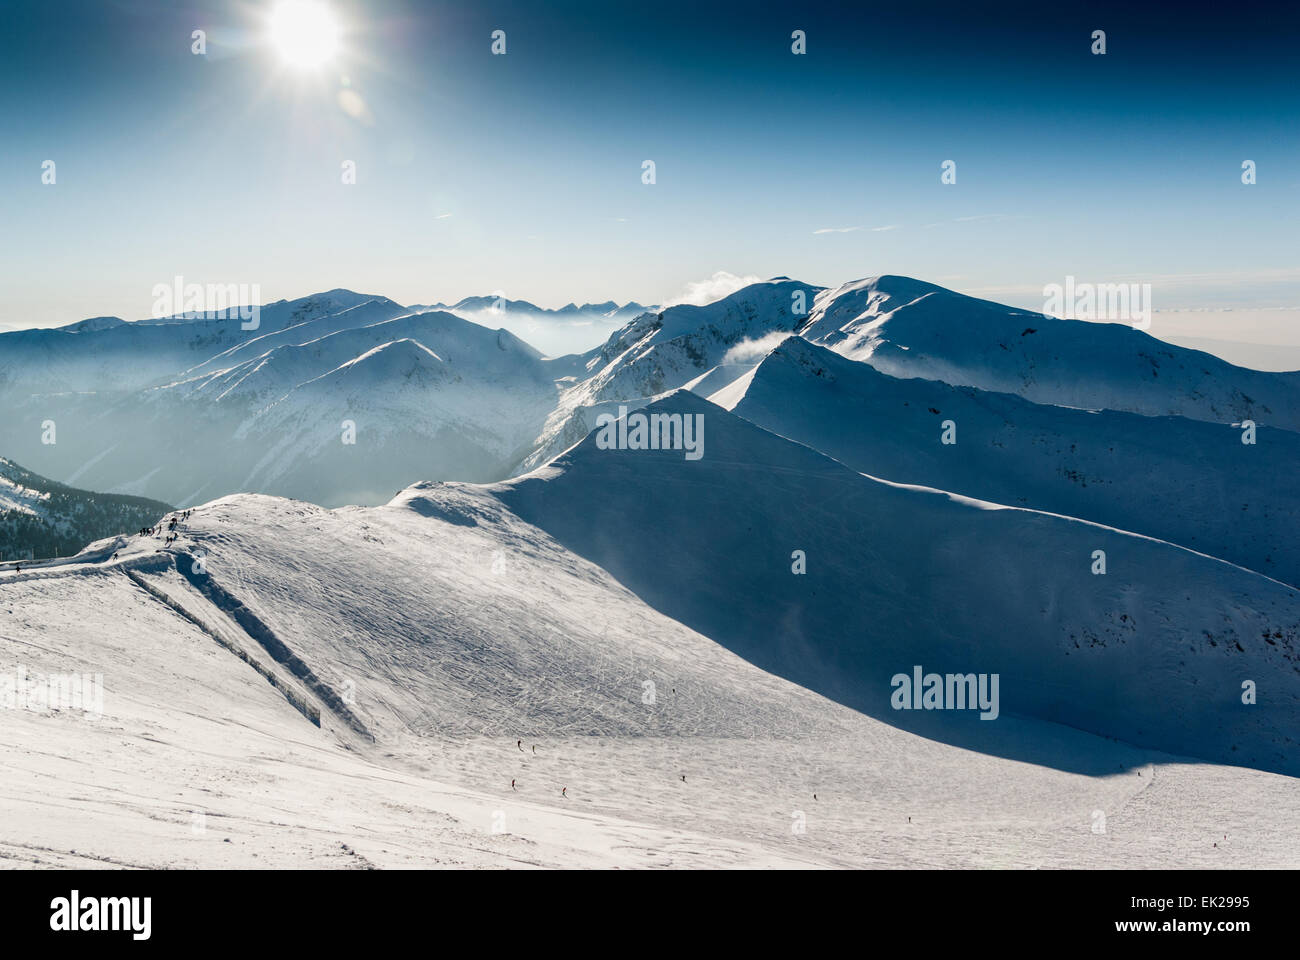 La ski area di frontiera polacco-slovacca e Tatra Occidentali visibile da Kasprowy Wierch, Polonia meridionale Foto Stock